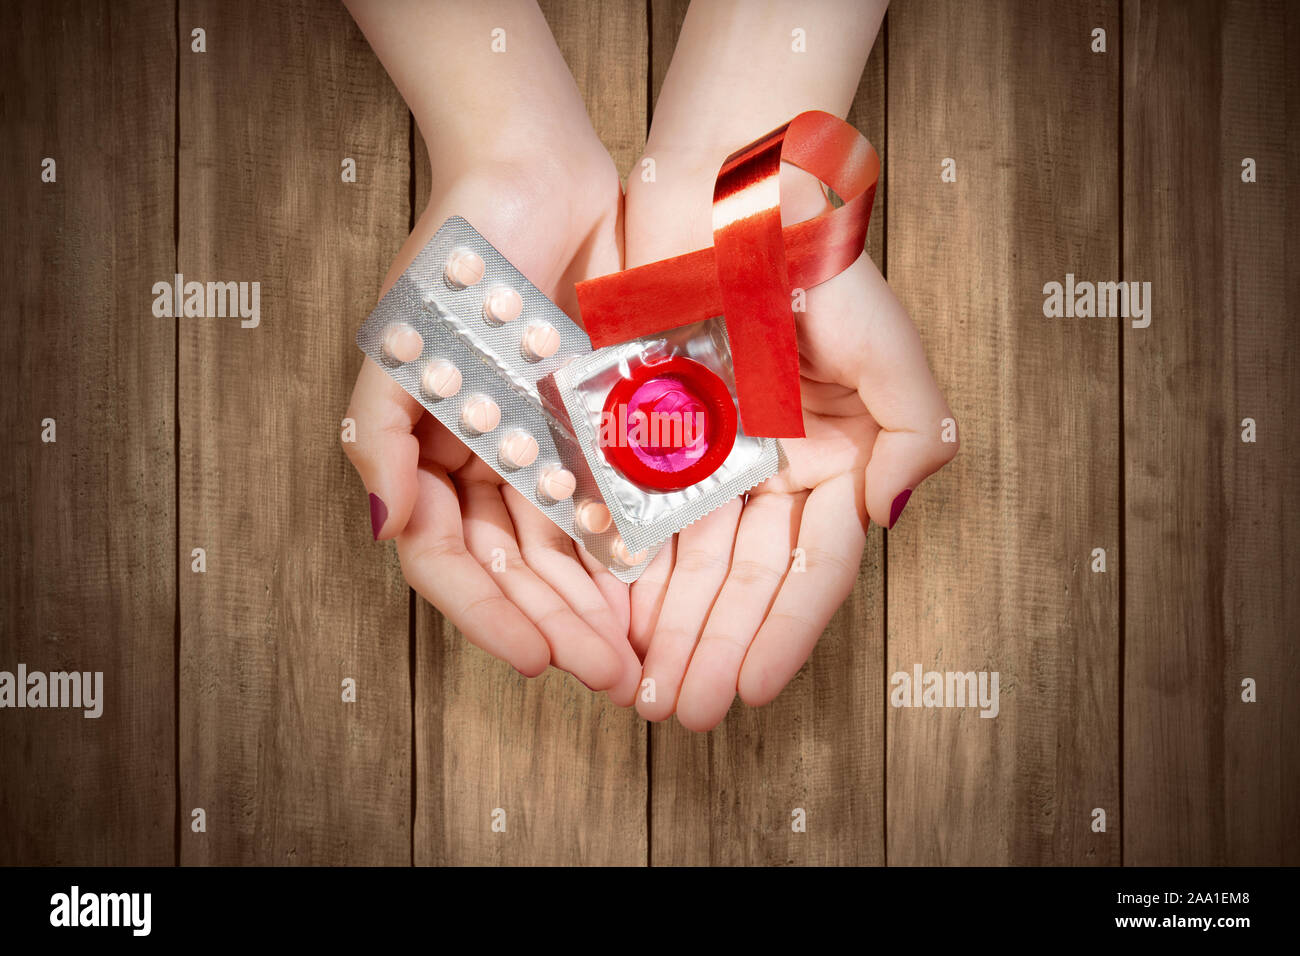 Des mains humaines montrant ruban rouge, pilules contraceptives, et d'un condom. Le Vih Sida sensibilisation ruban Banque D'Images